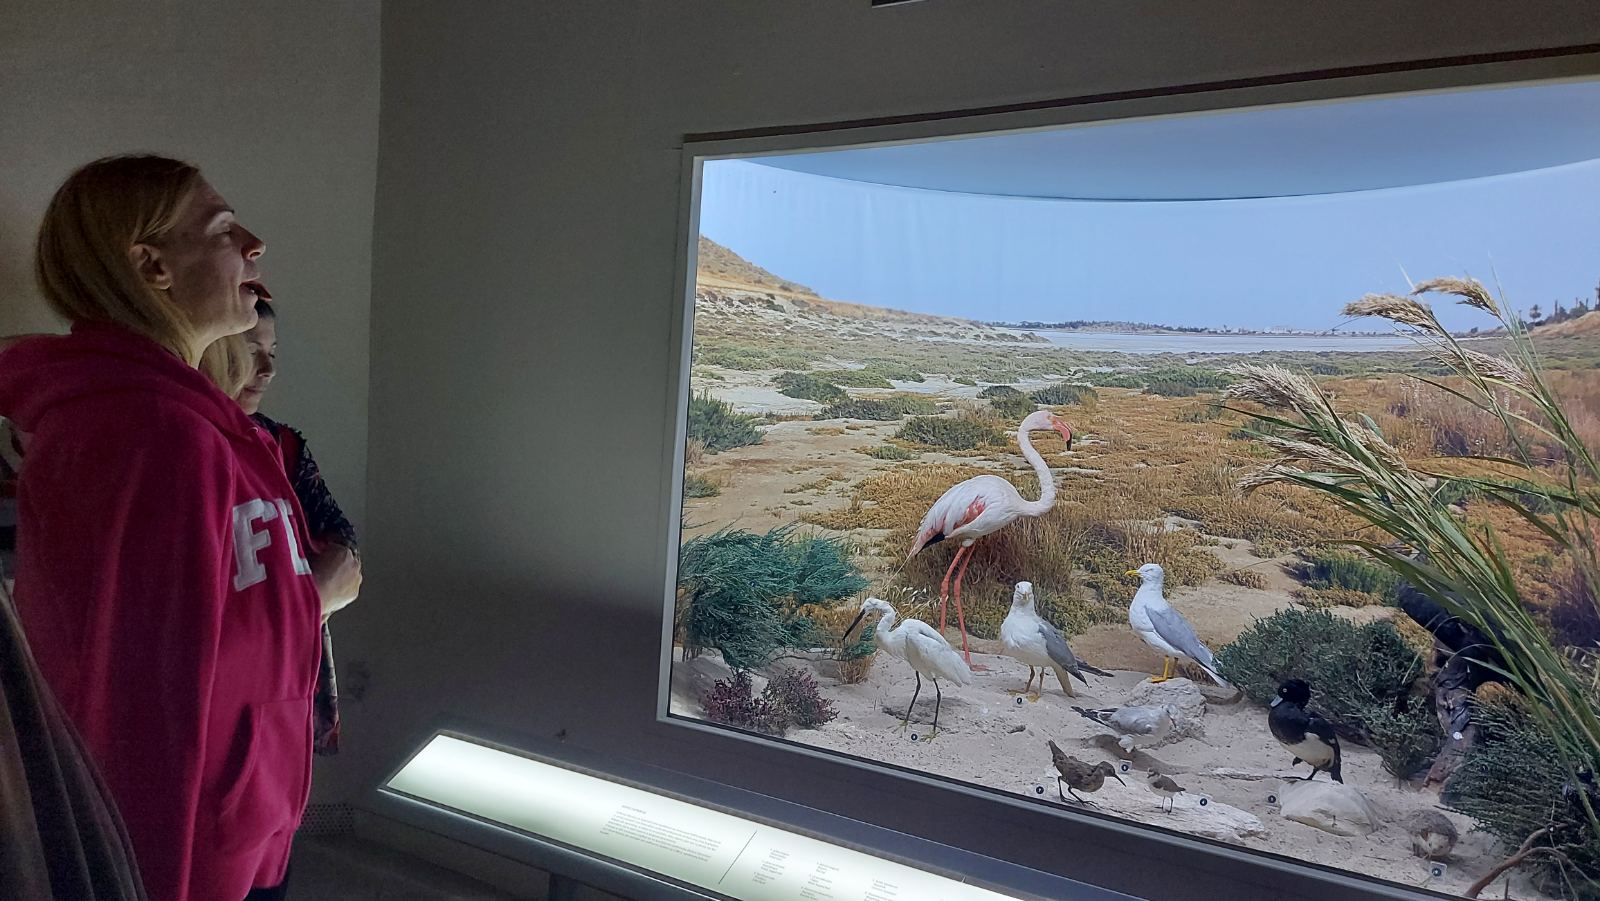 Οι εκπαιδευόμενοι στο Μουσείο του Κέντρου, απέναντι από οθόνη στην οποία φαίνονται πουλιά σε μια αμμώδη περιοχή. Ένα φλαμίνγκο με ροζ μύτη και πόδια, ένας ερωδιός δυο γλάροι και μικρότερα πουλιά ανάμεσα σε χαμηλούς θάμνους. Στο βάθος μια λίμνη.